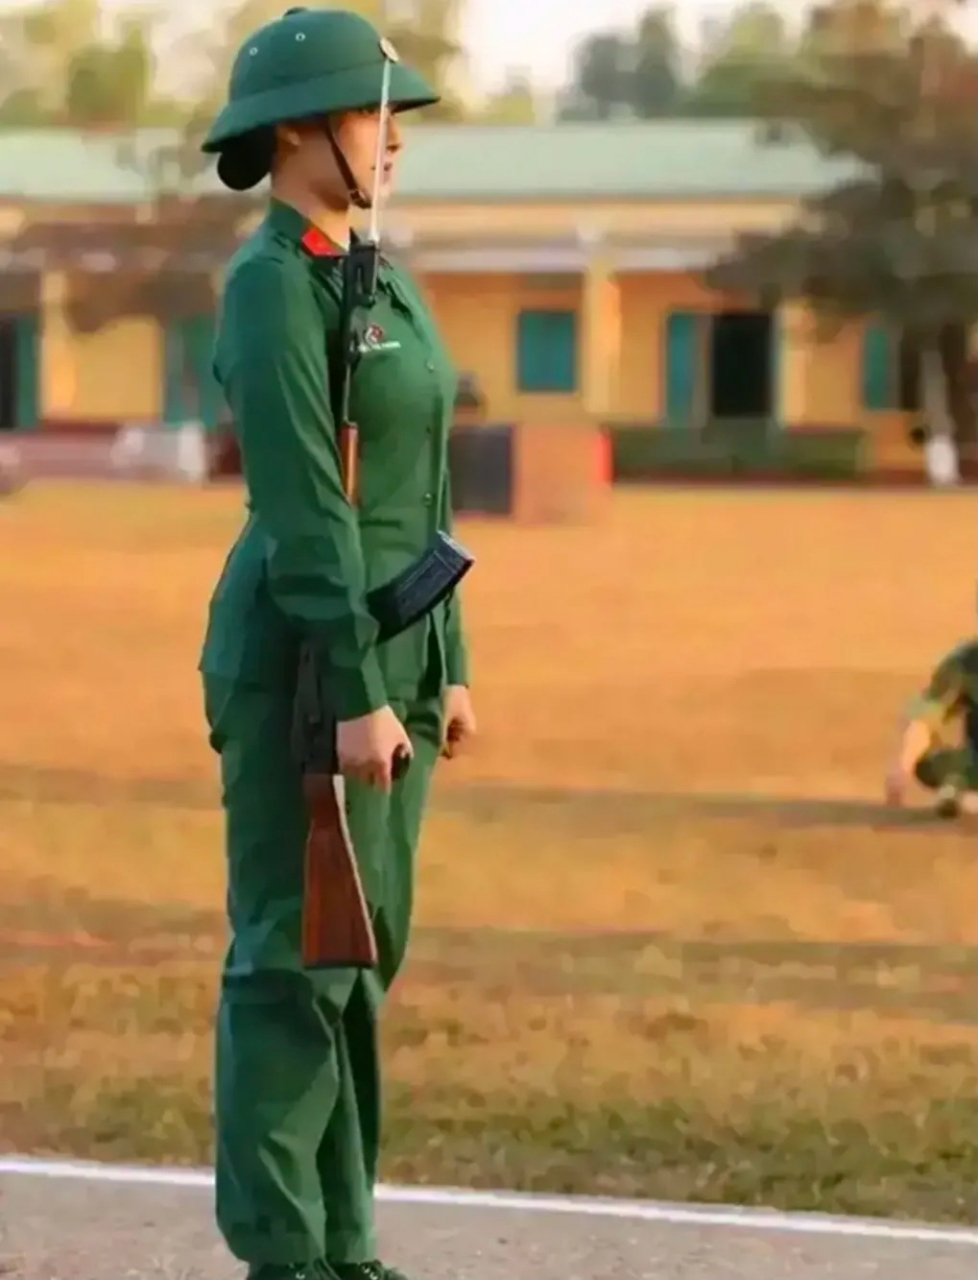 2012年,一名越南女兵训练中抓拍到的照片